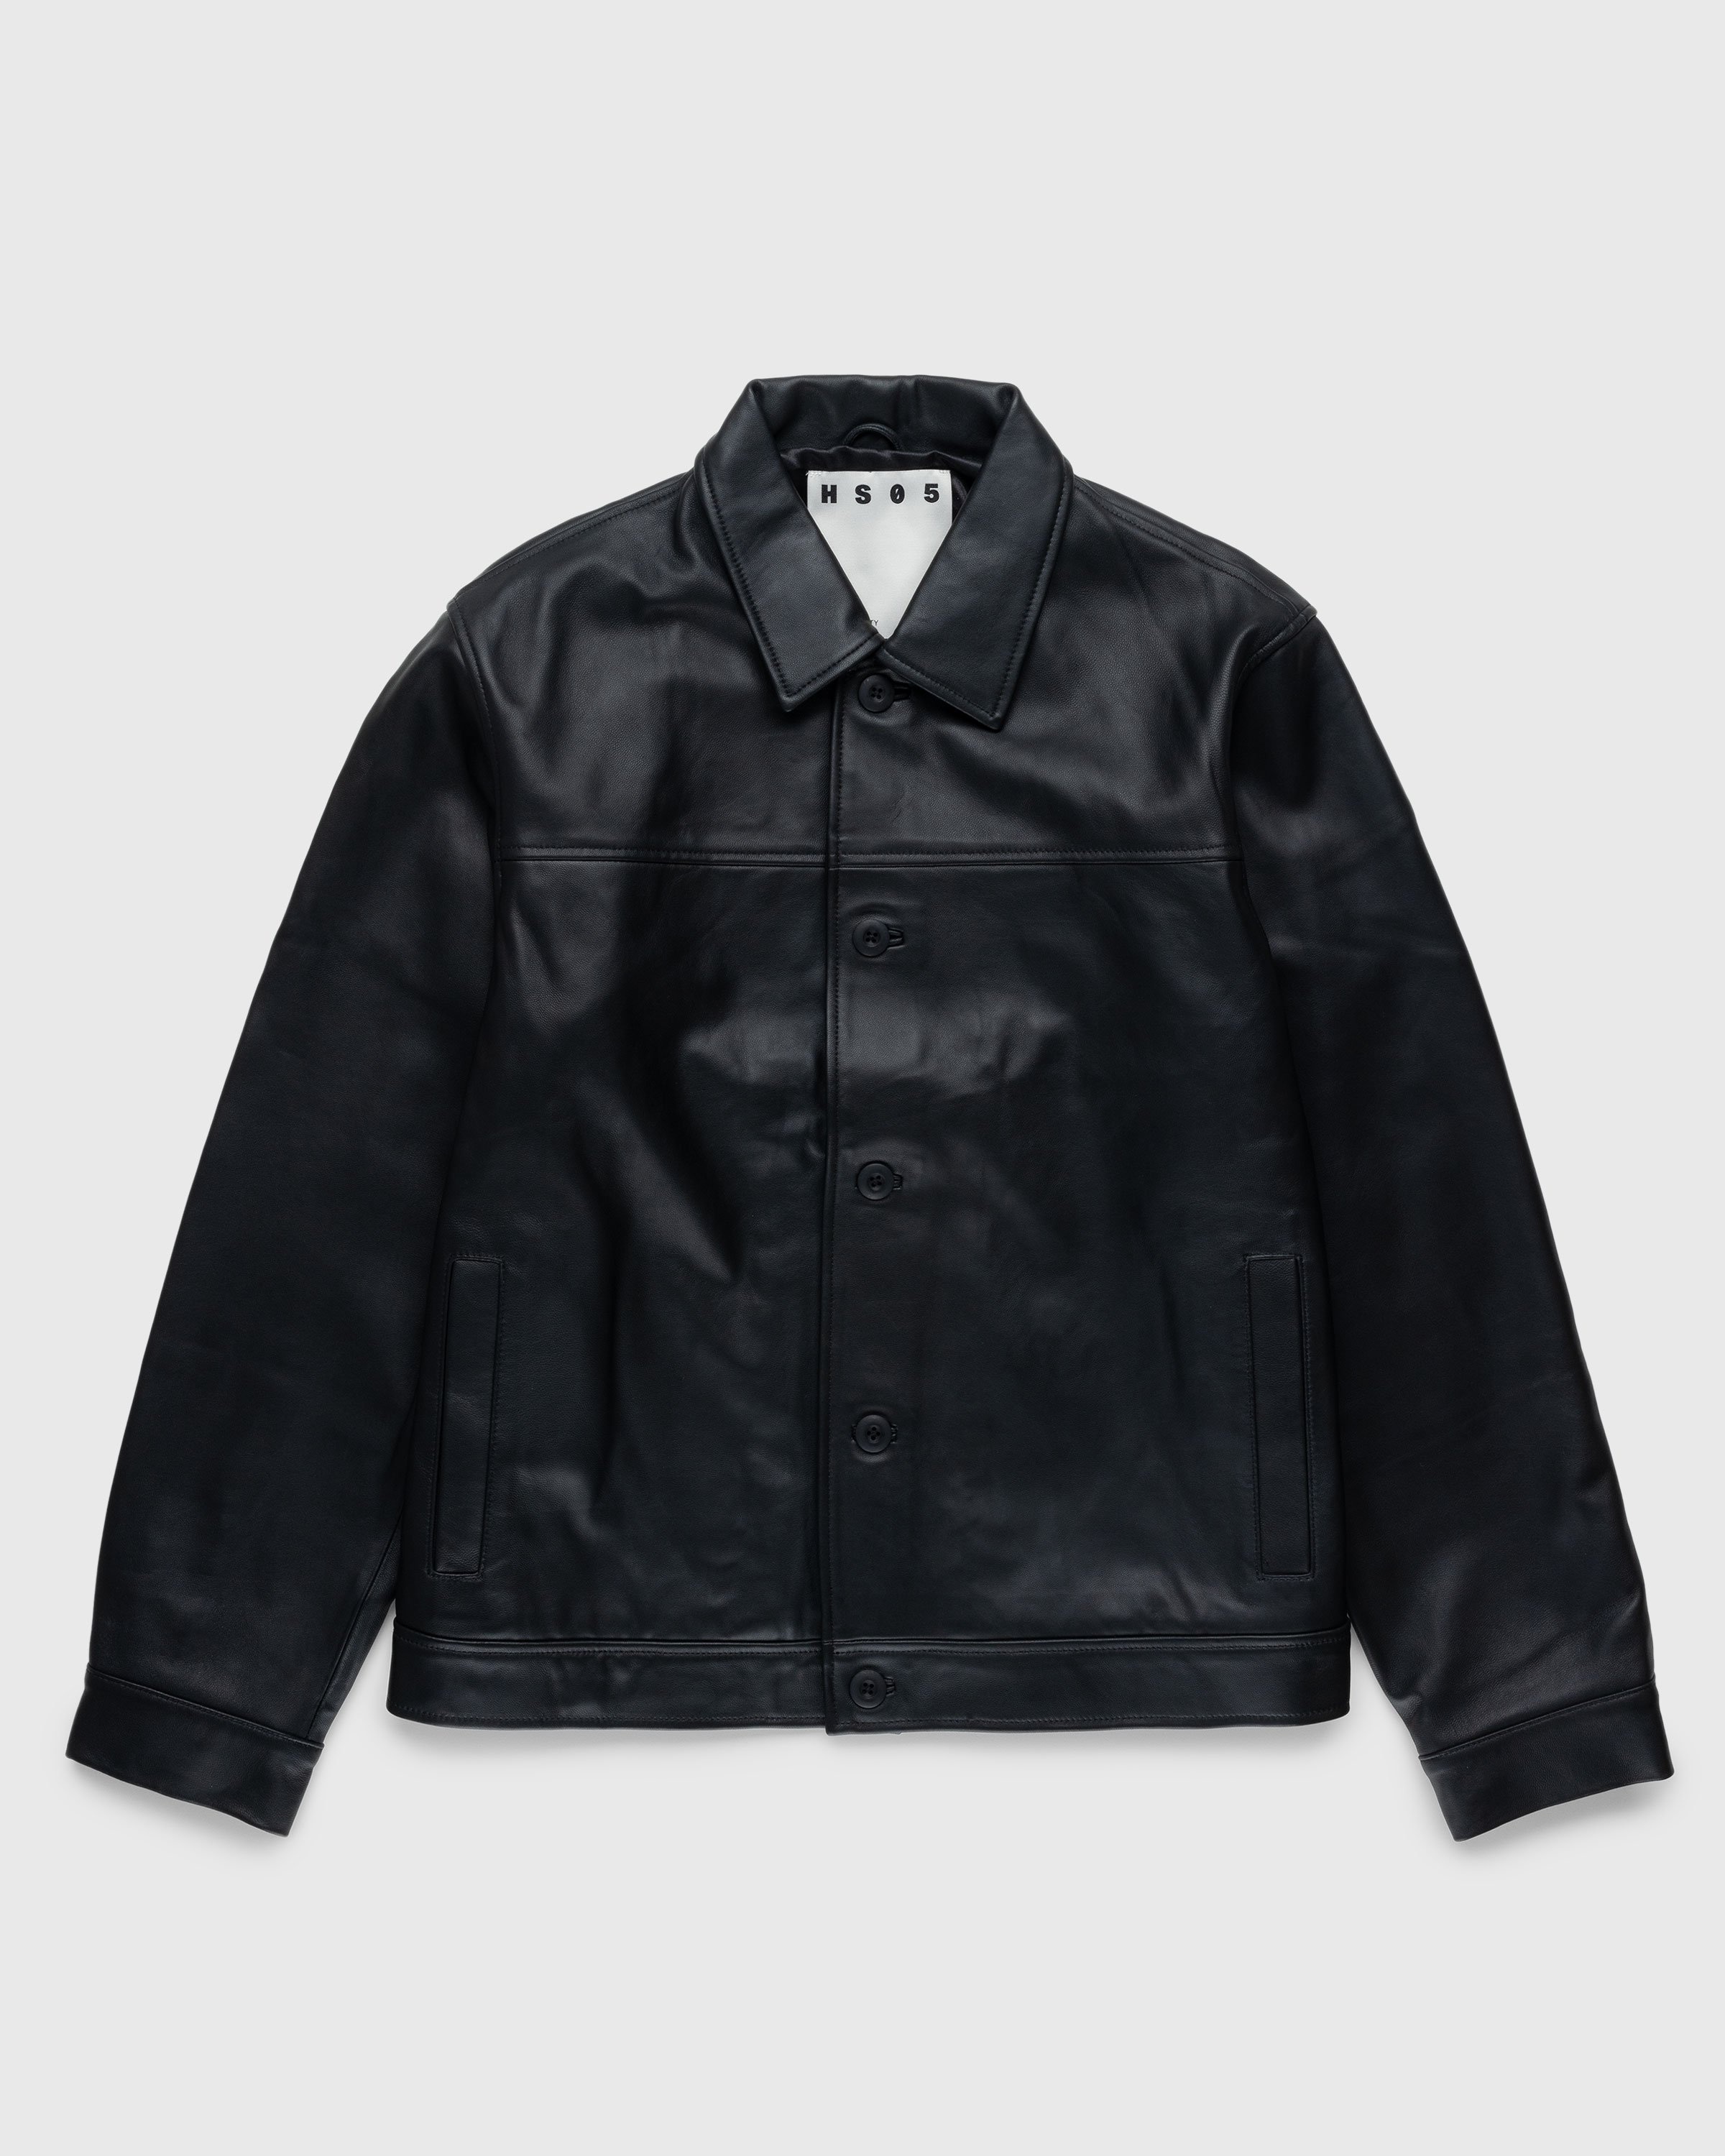 Highsnobiety HS05 – Leather Jacket Black | Highsnobiety Shop